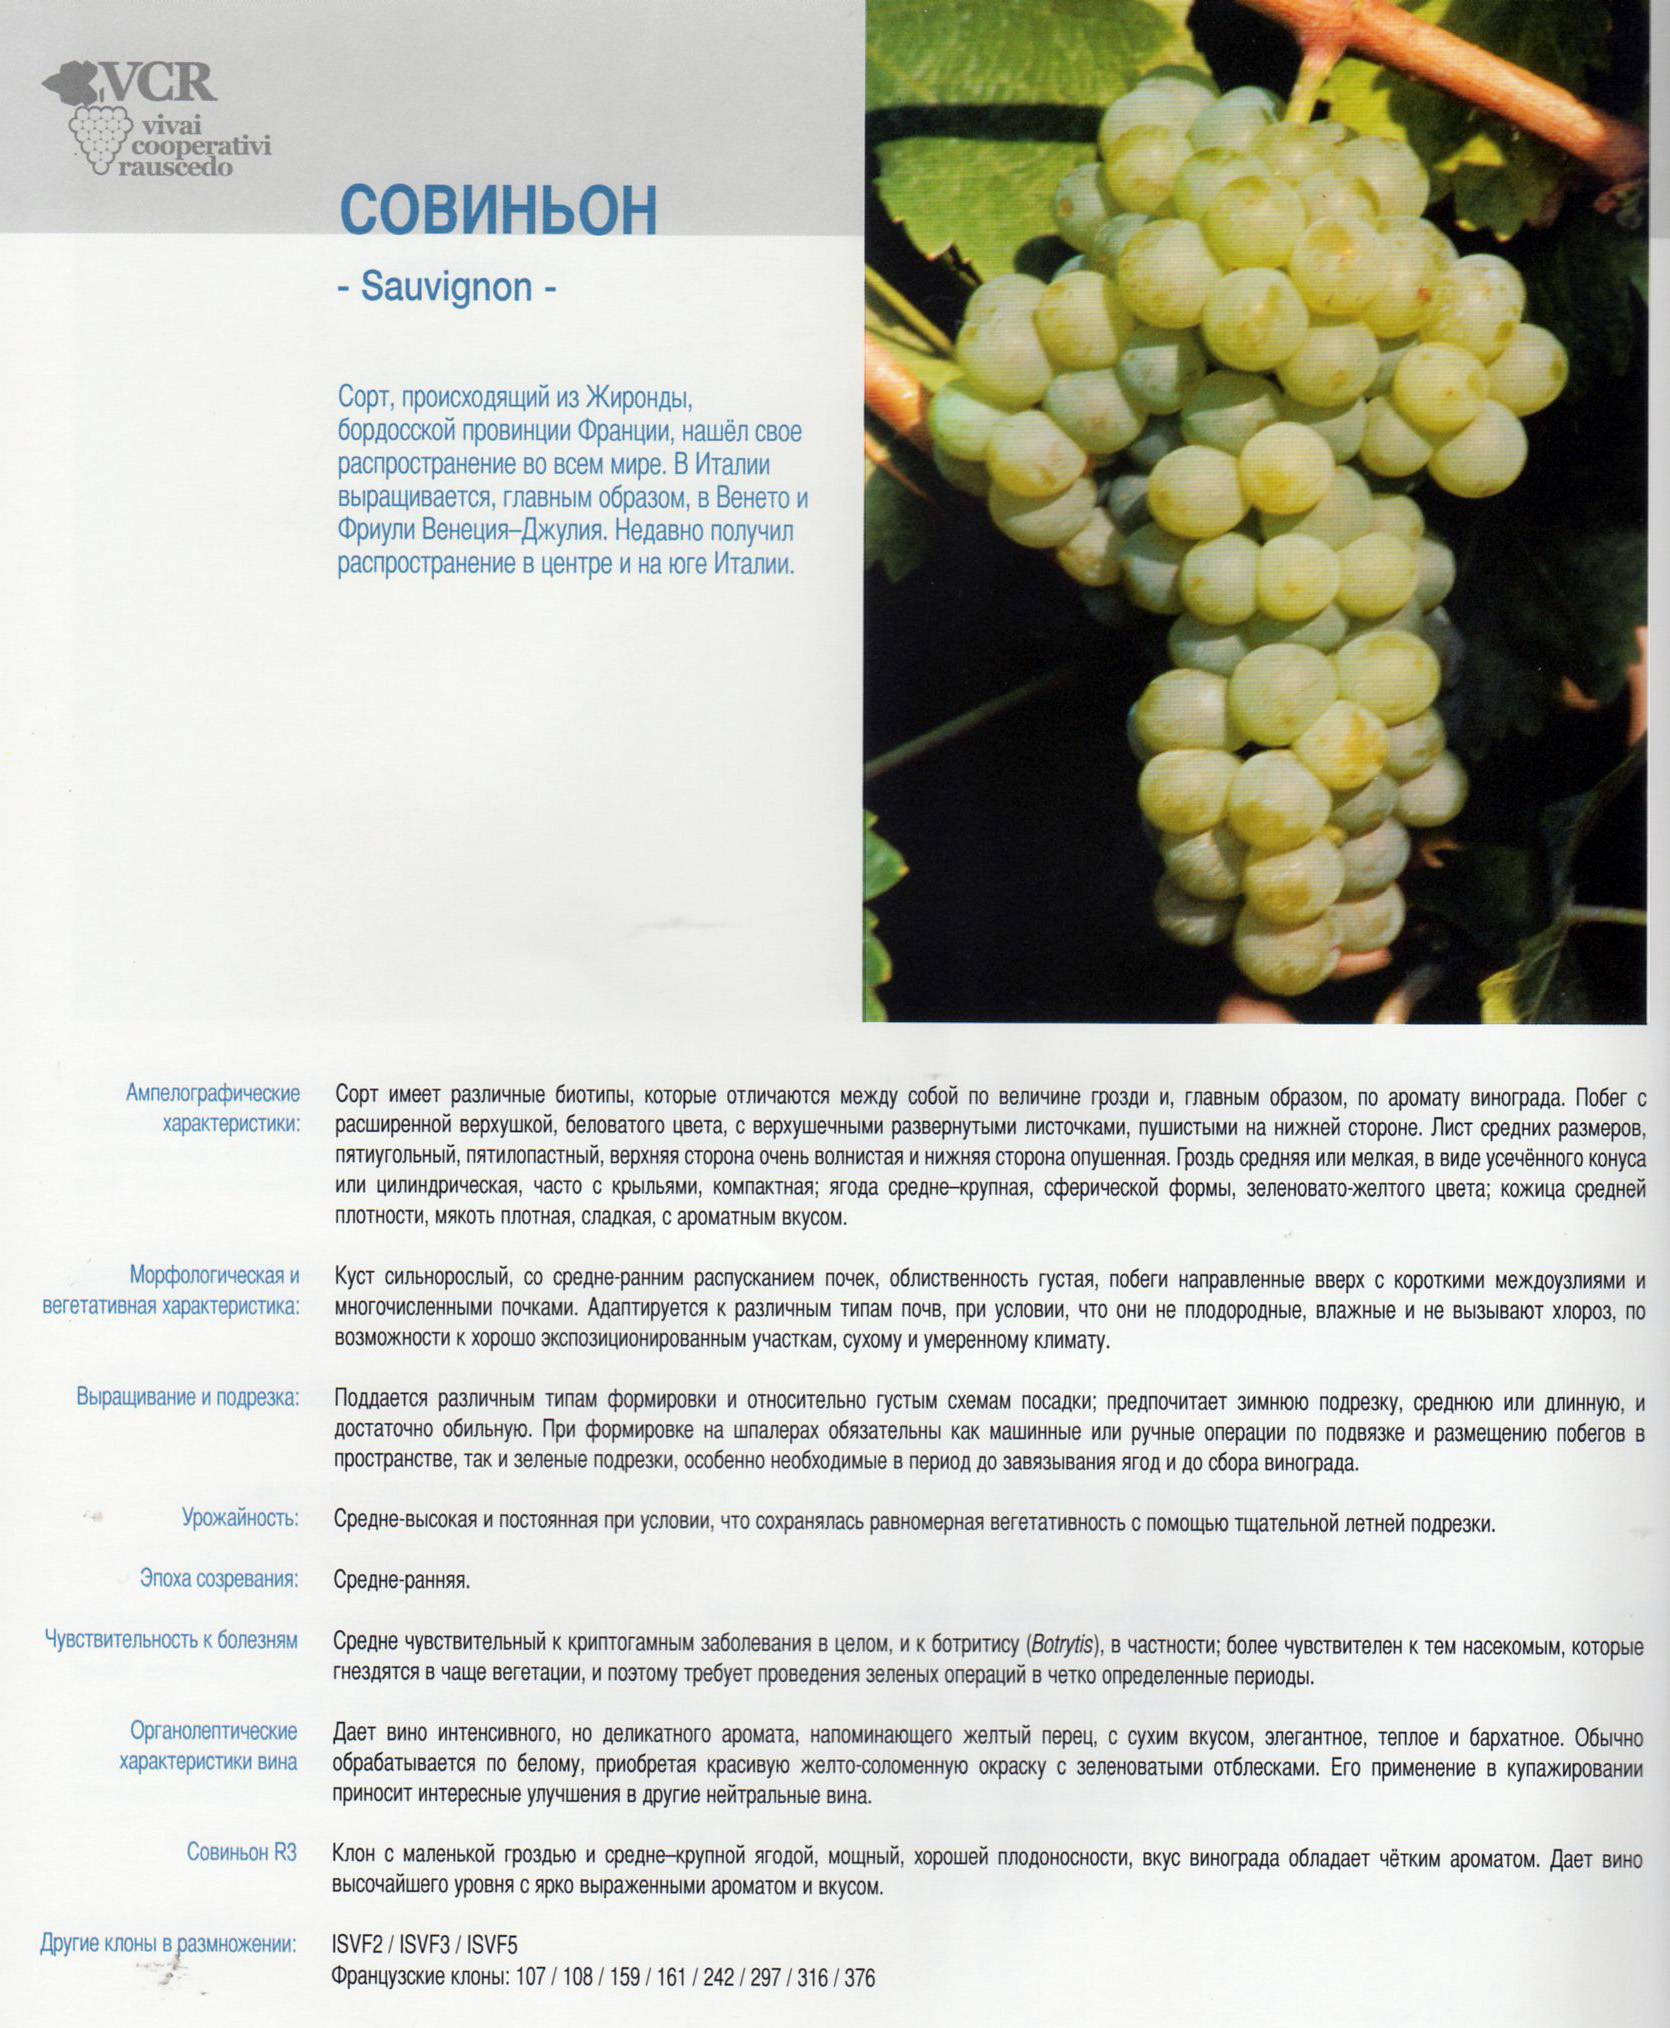 Сорт винограда каберне совиньон: описание, уход, выращивание и отзывы